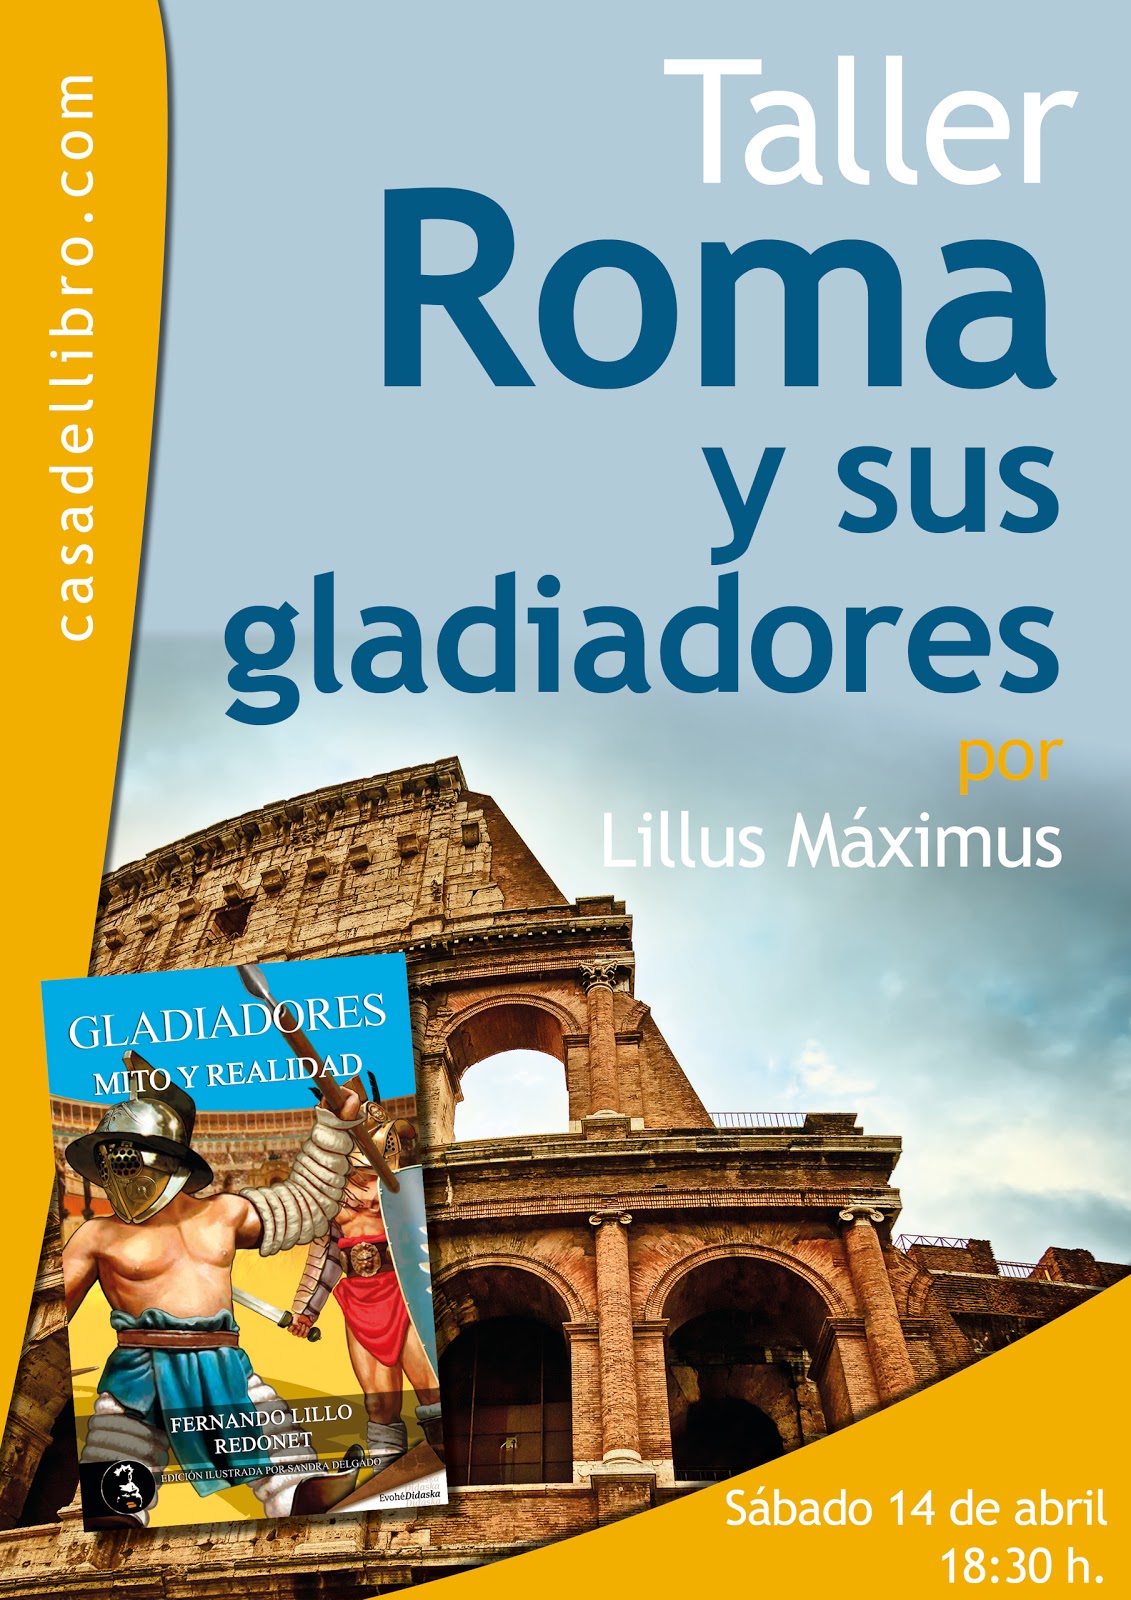 Blog de Fernando Lillo Redonet: Taller de Roma y sus gladiadores en La